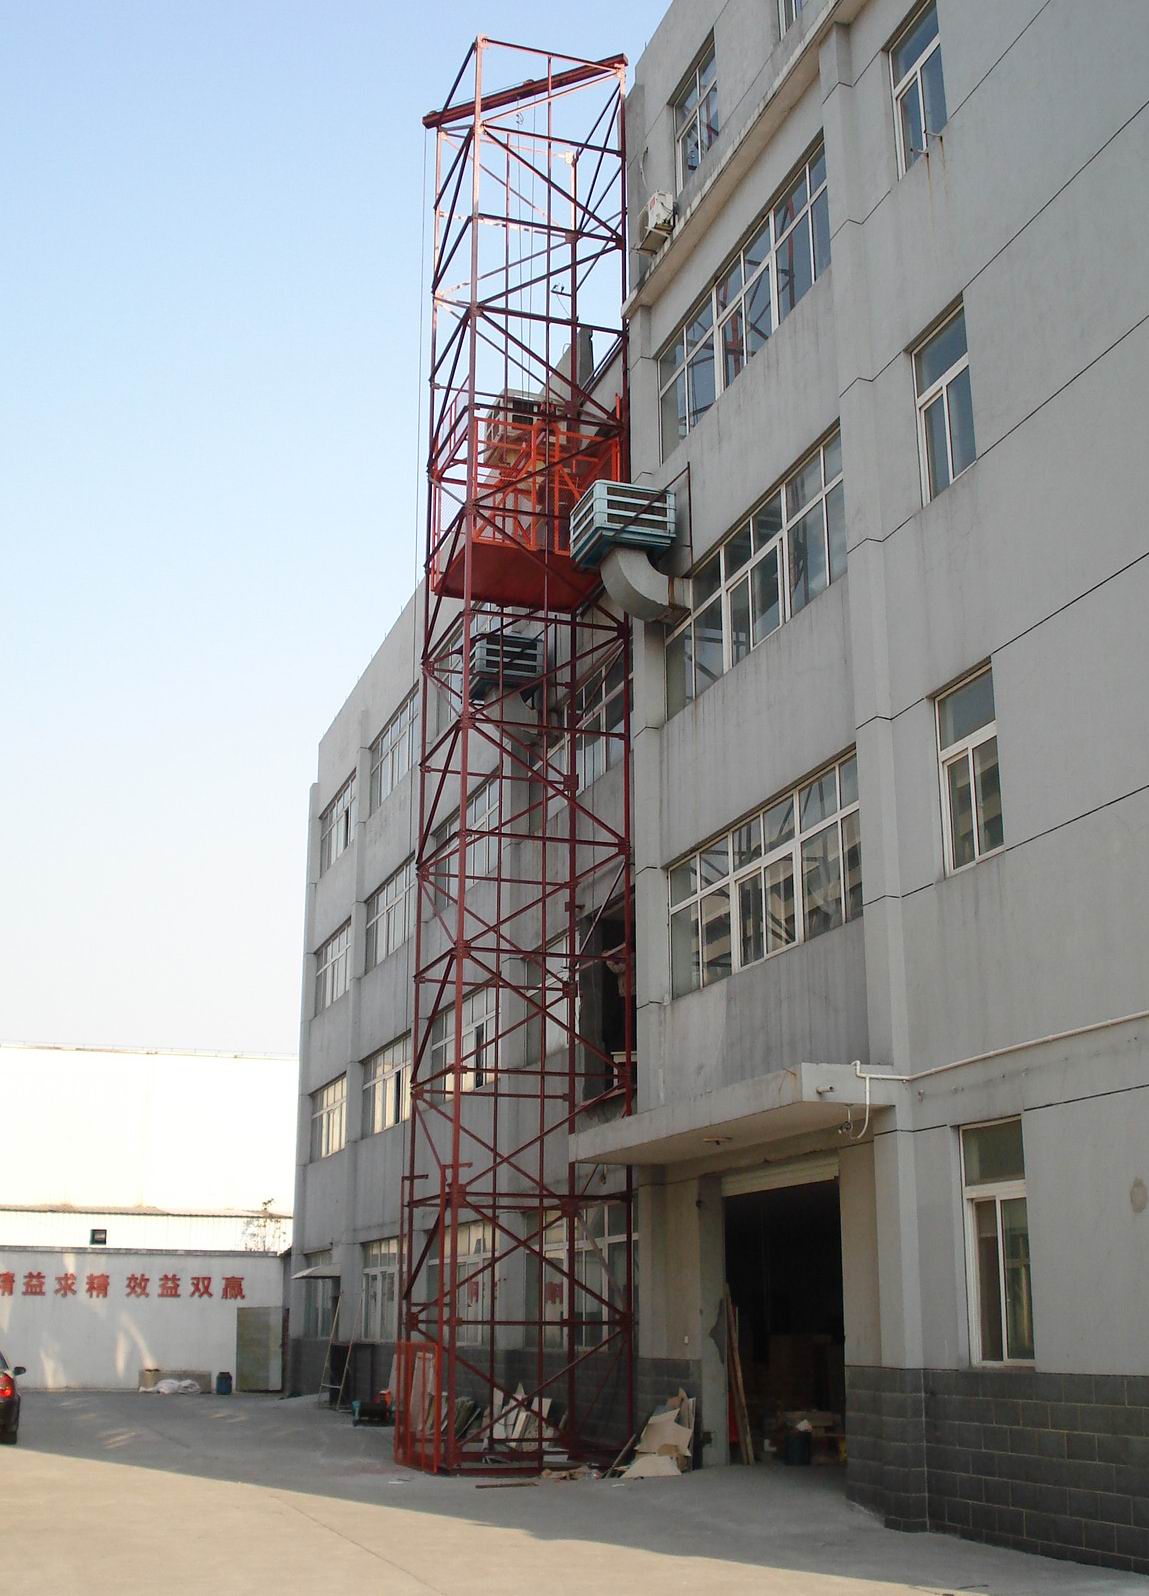 上海宏天建筑工程设备有限公司是专业生产,制造,销售施工升降机